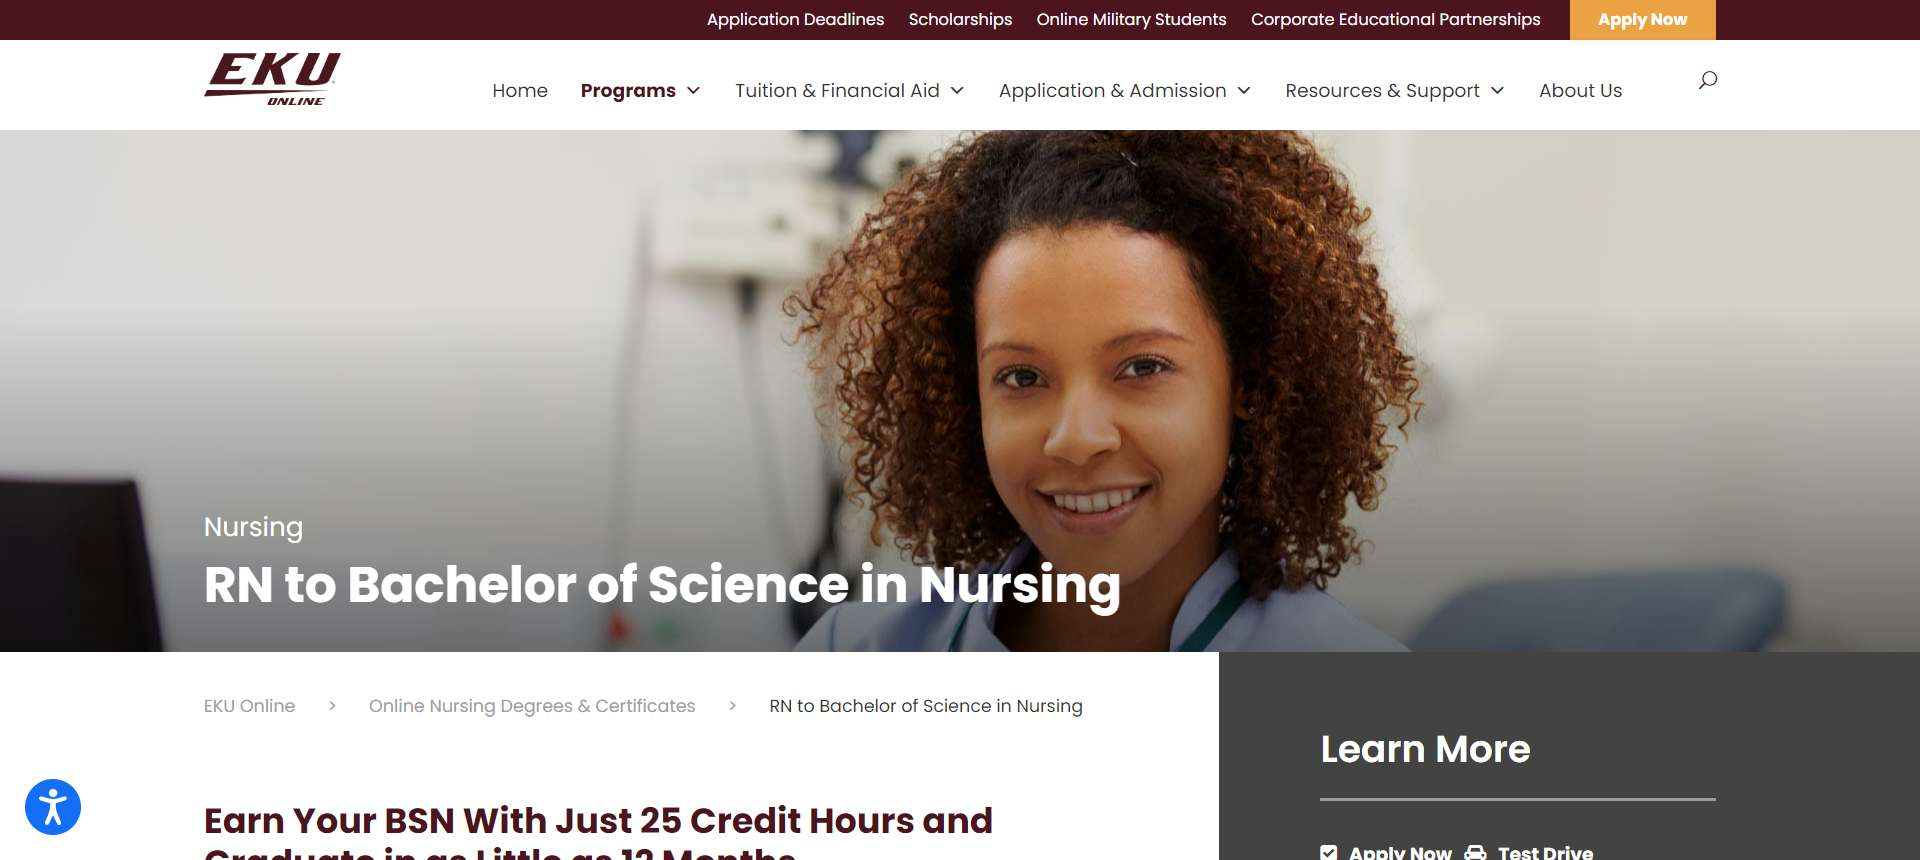 BSN in nursing programs Accelerated BEN Programs online